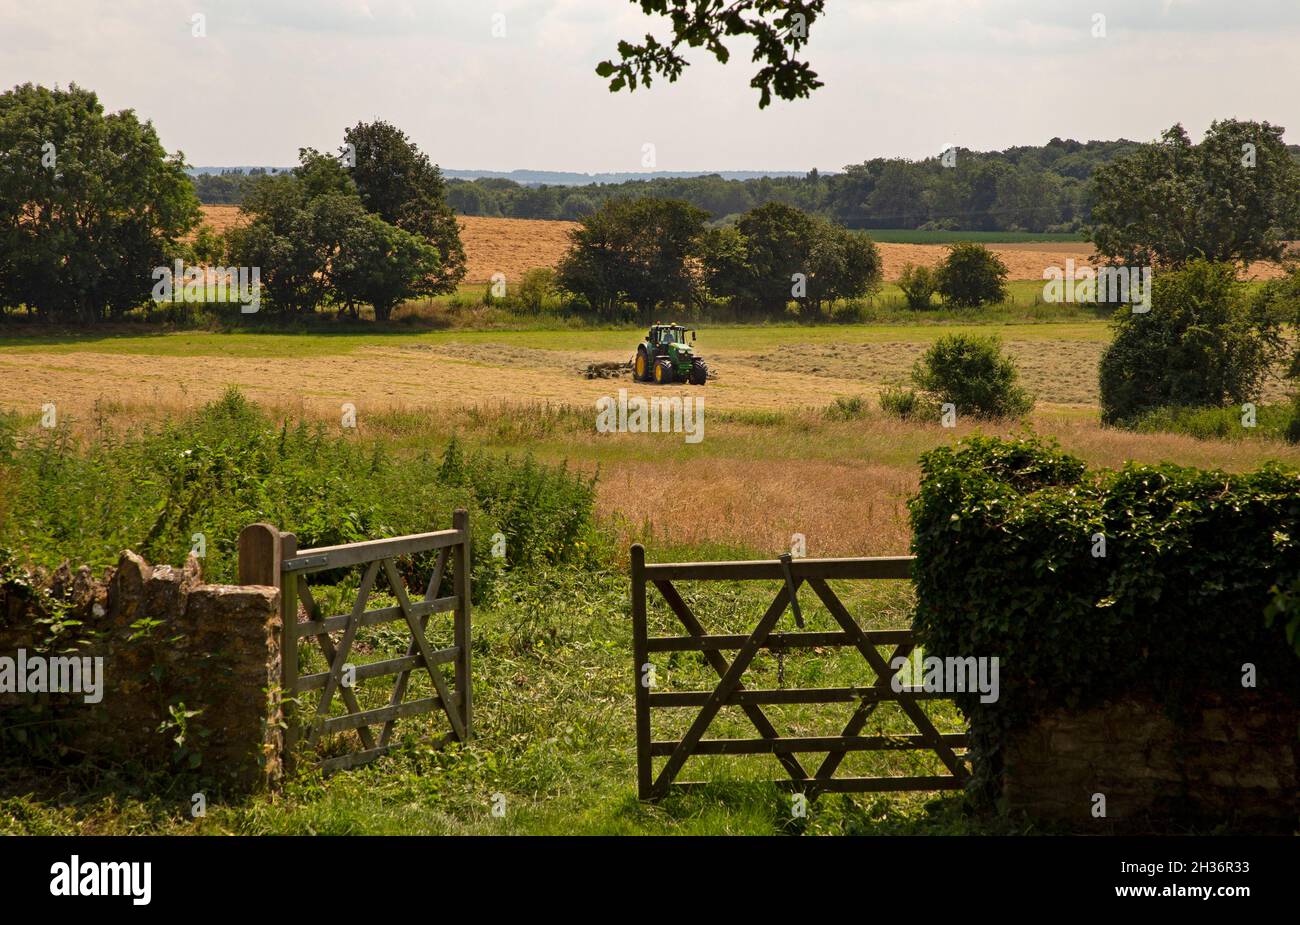 Traktor im Feld trocknen Heu in Wiese, oxfordshire, england Stockfoto